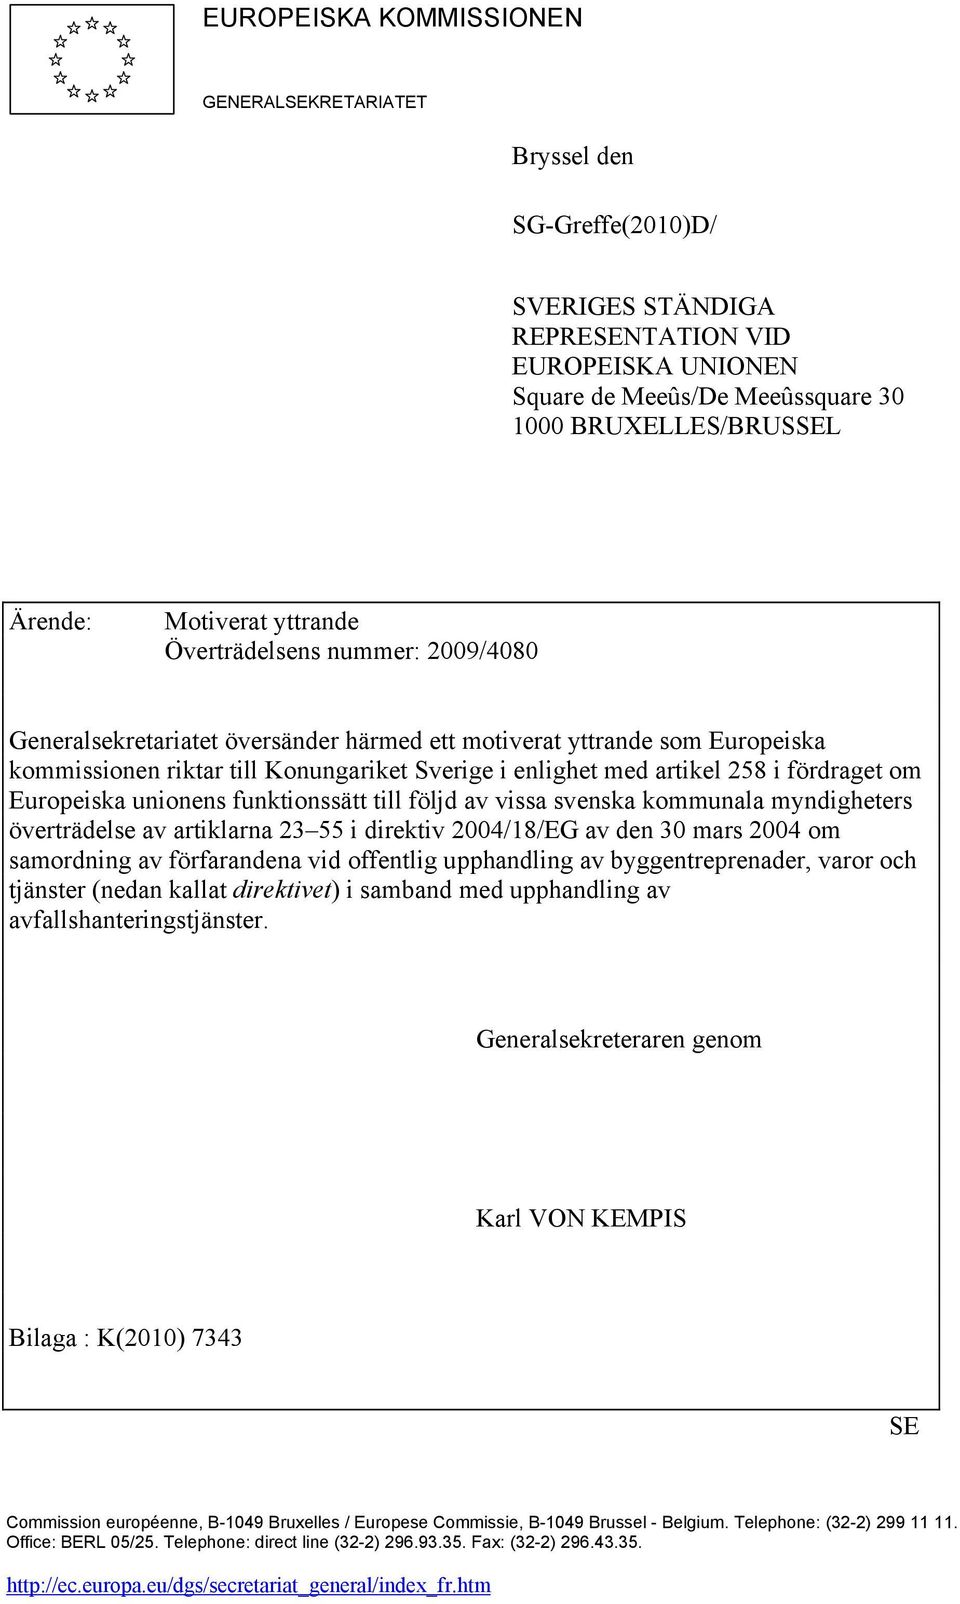 258 i fördraget om Europeiska unionens funktionssätt till följd av vissa svenska kommunala myndigheters överträdelse av artiklarna 23 55 i direktiv 2004/18/EG av den 30 mars 2004 om samordning av